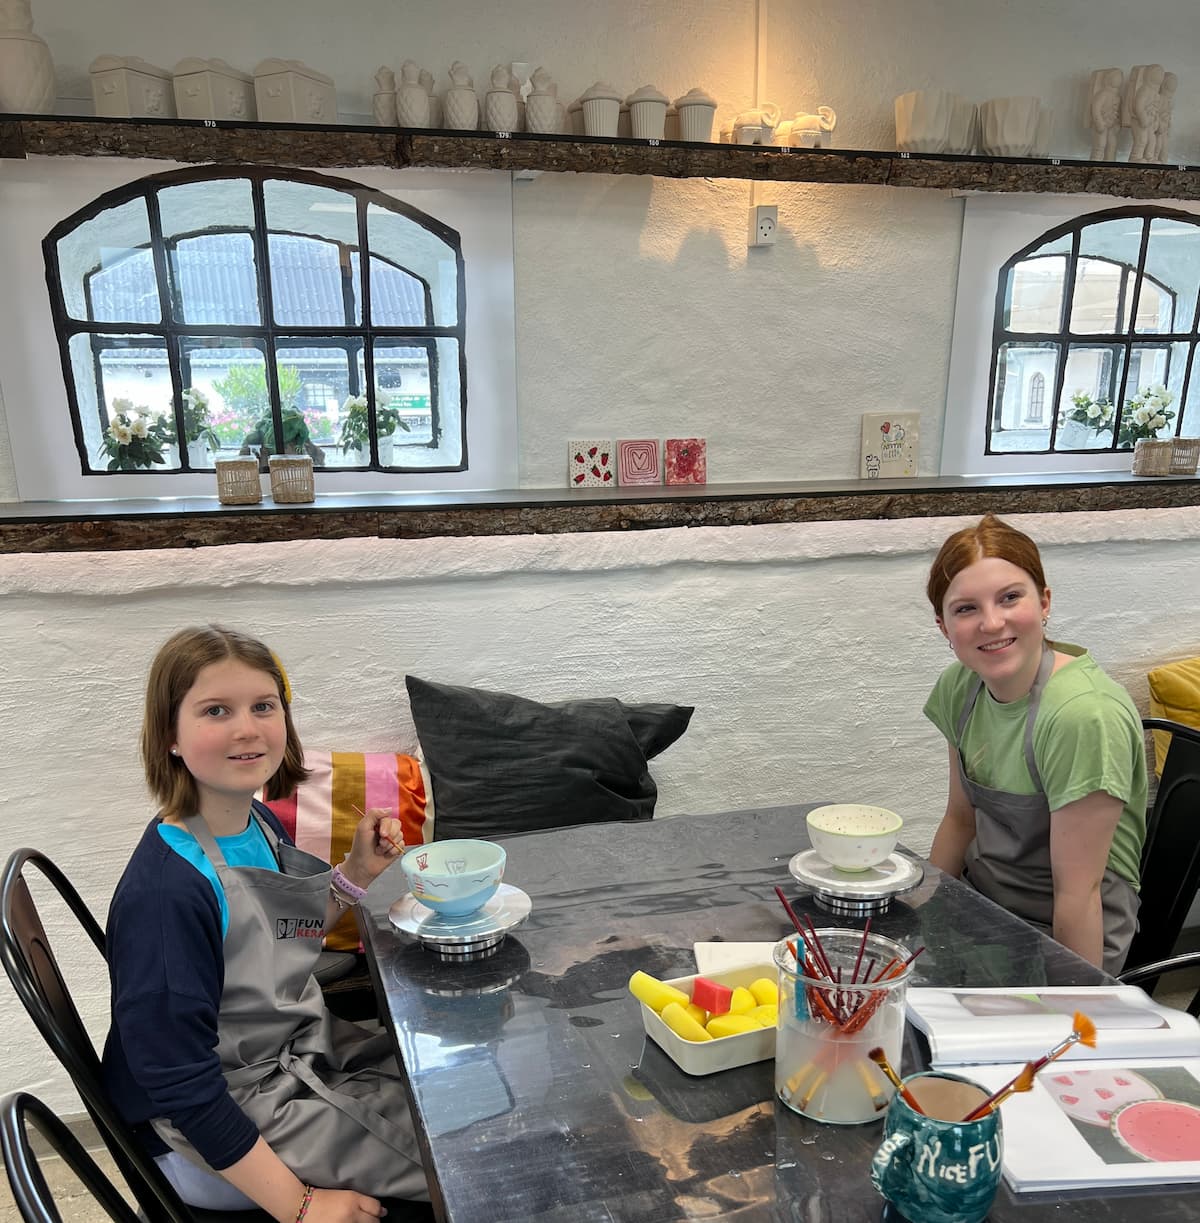 To piger sidder og smiler ved bord og laver keramik hos Funart Keramik - Oplevelser for børn i Nordjylland.